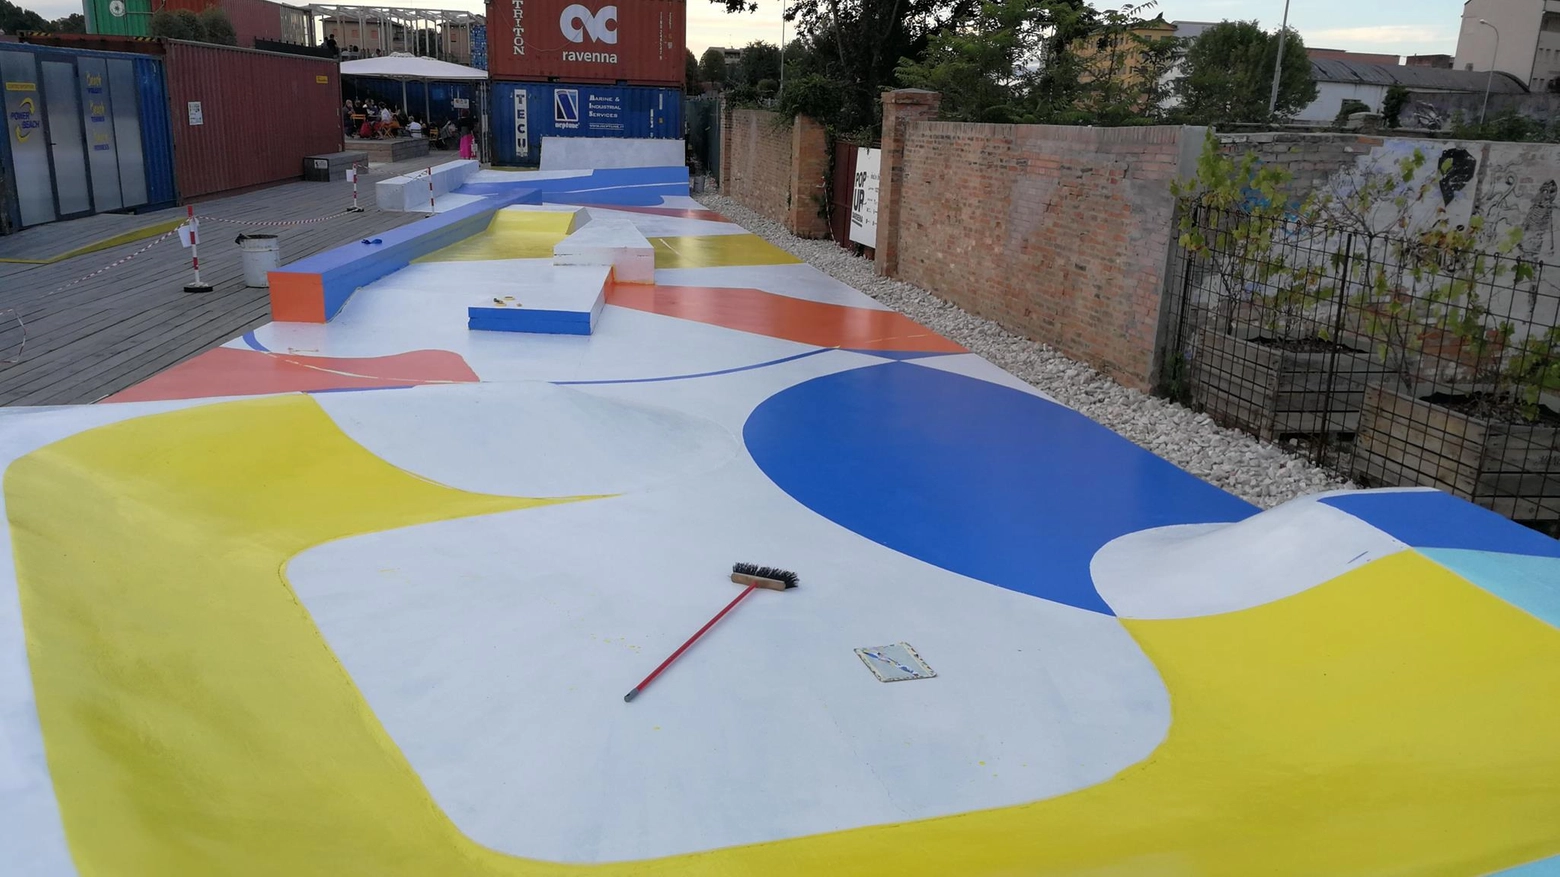 La superficie dello skatepark dipinto dal gruppo artistico Gue